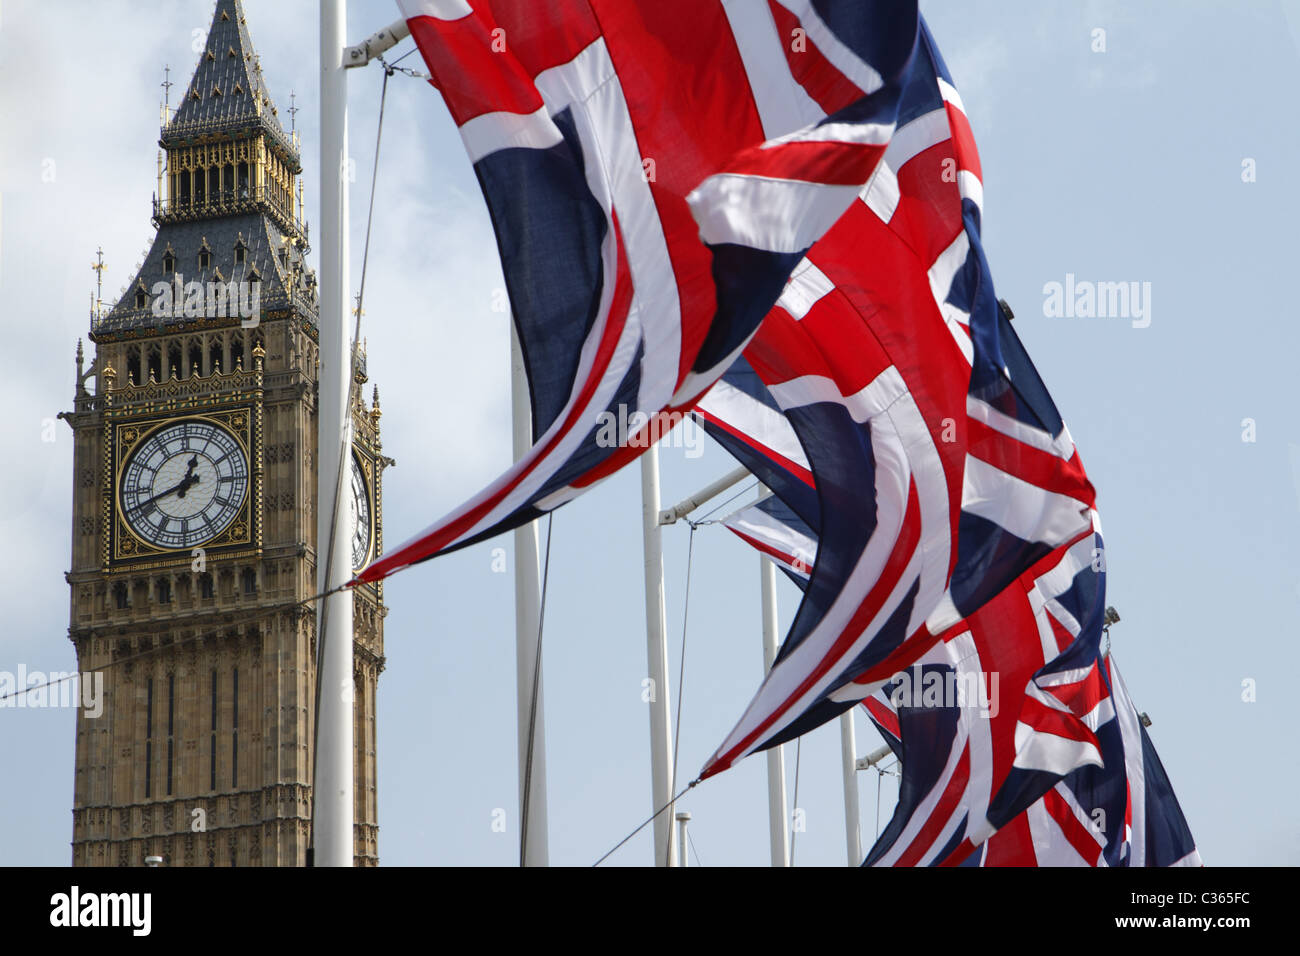 Banderas sindicales volando delante del Big Ben, Londres, Reino Unido. Foto de stock